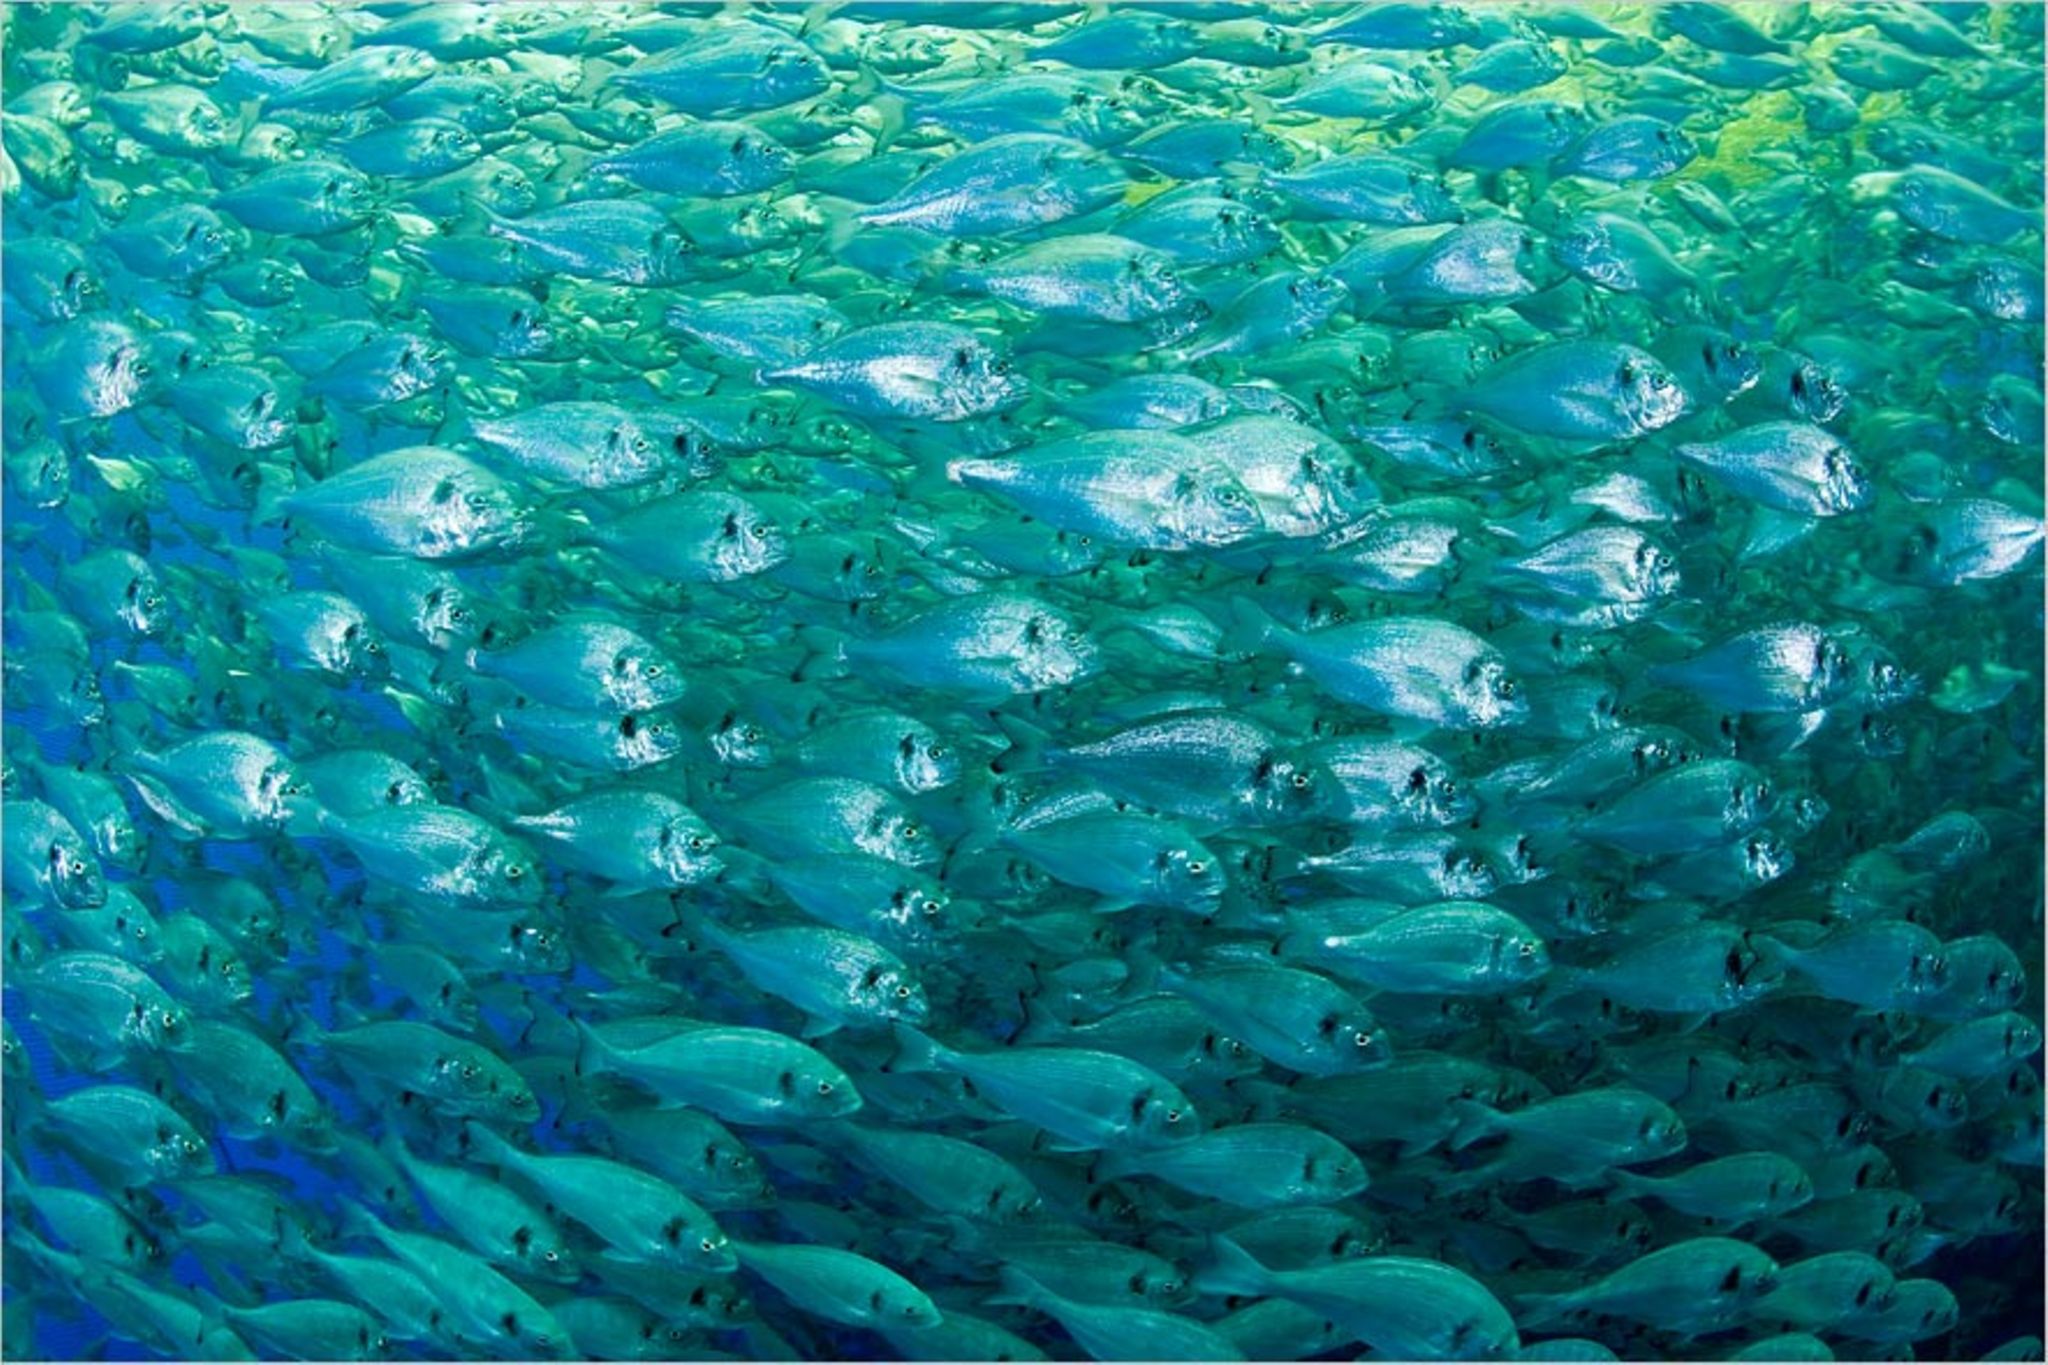 Fischereipolitik: Fischkonsum ohne Ende? - [GEO]